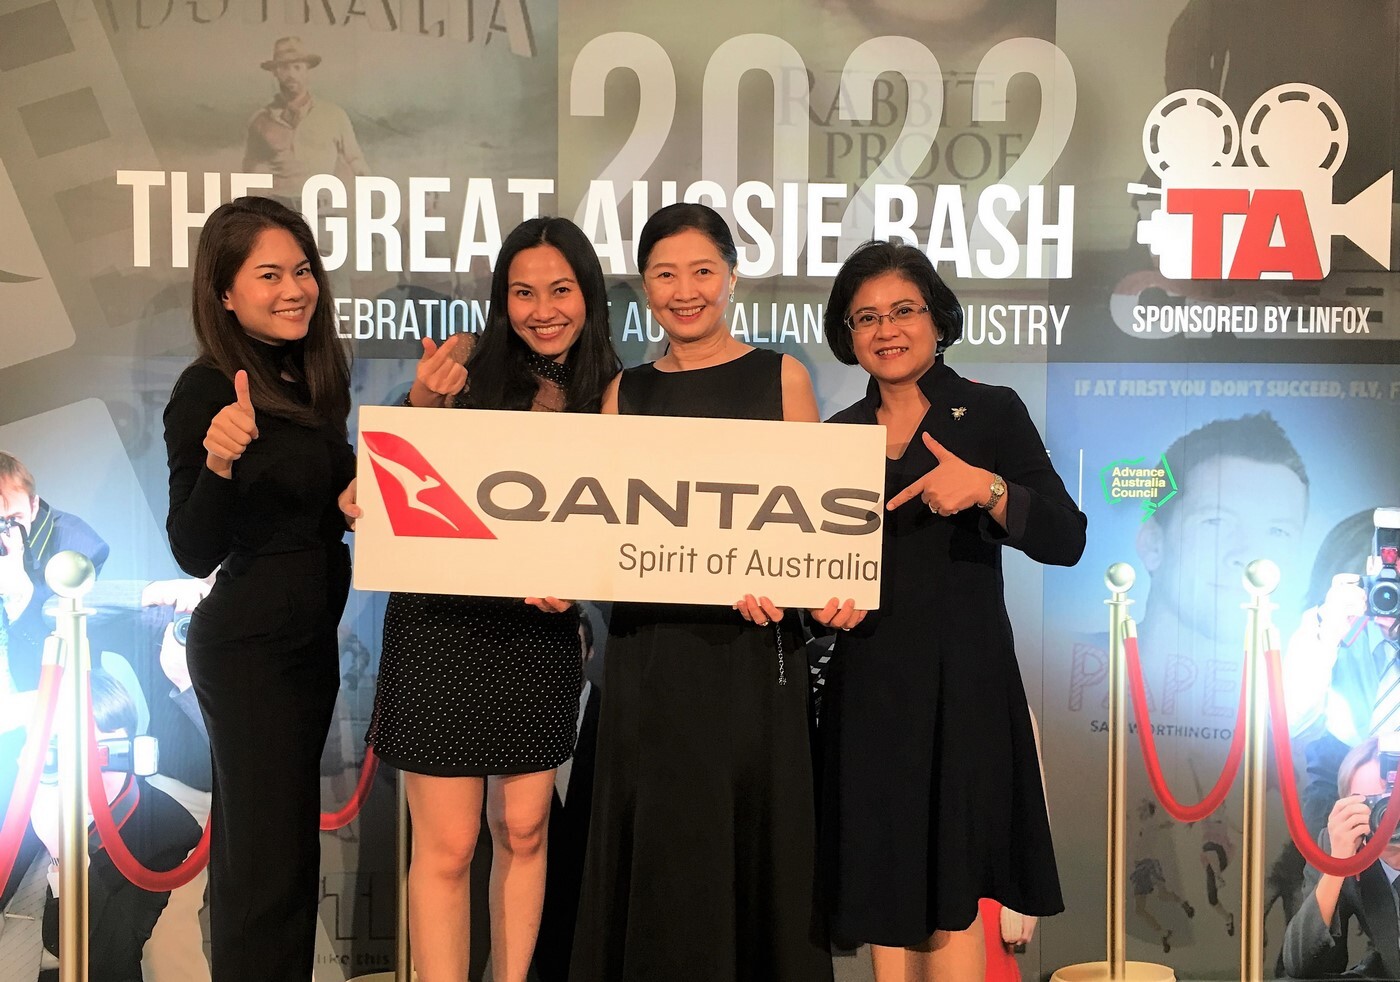 สายการบินแควนตัสมอบรางวัลตั๋วโดยสารแก่ผู้โชคดีงาน "The Great Aussie Bash 2022"